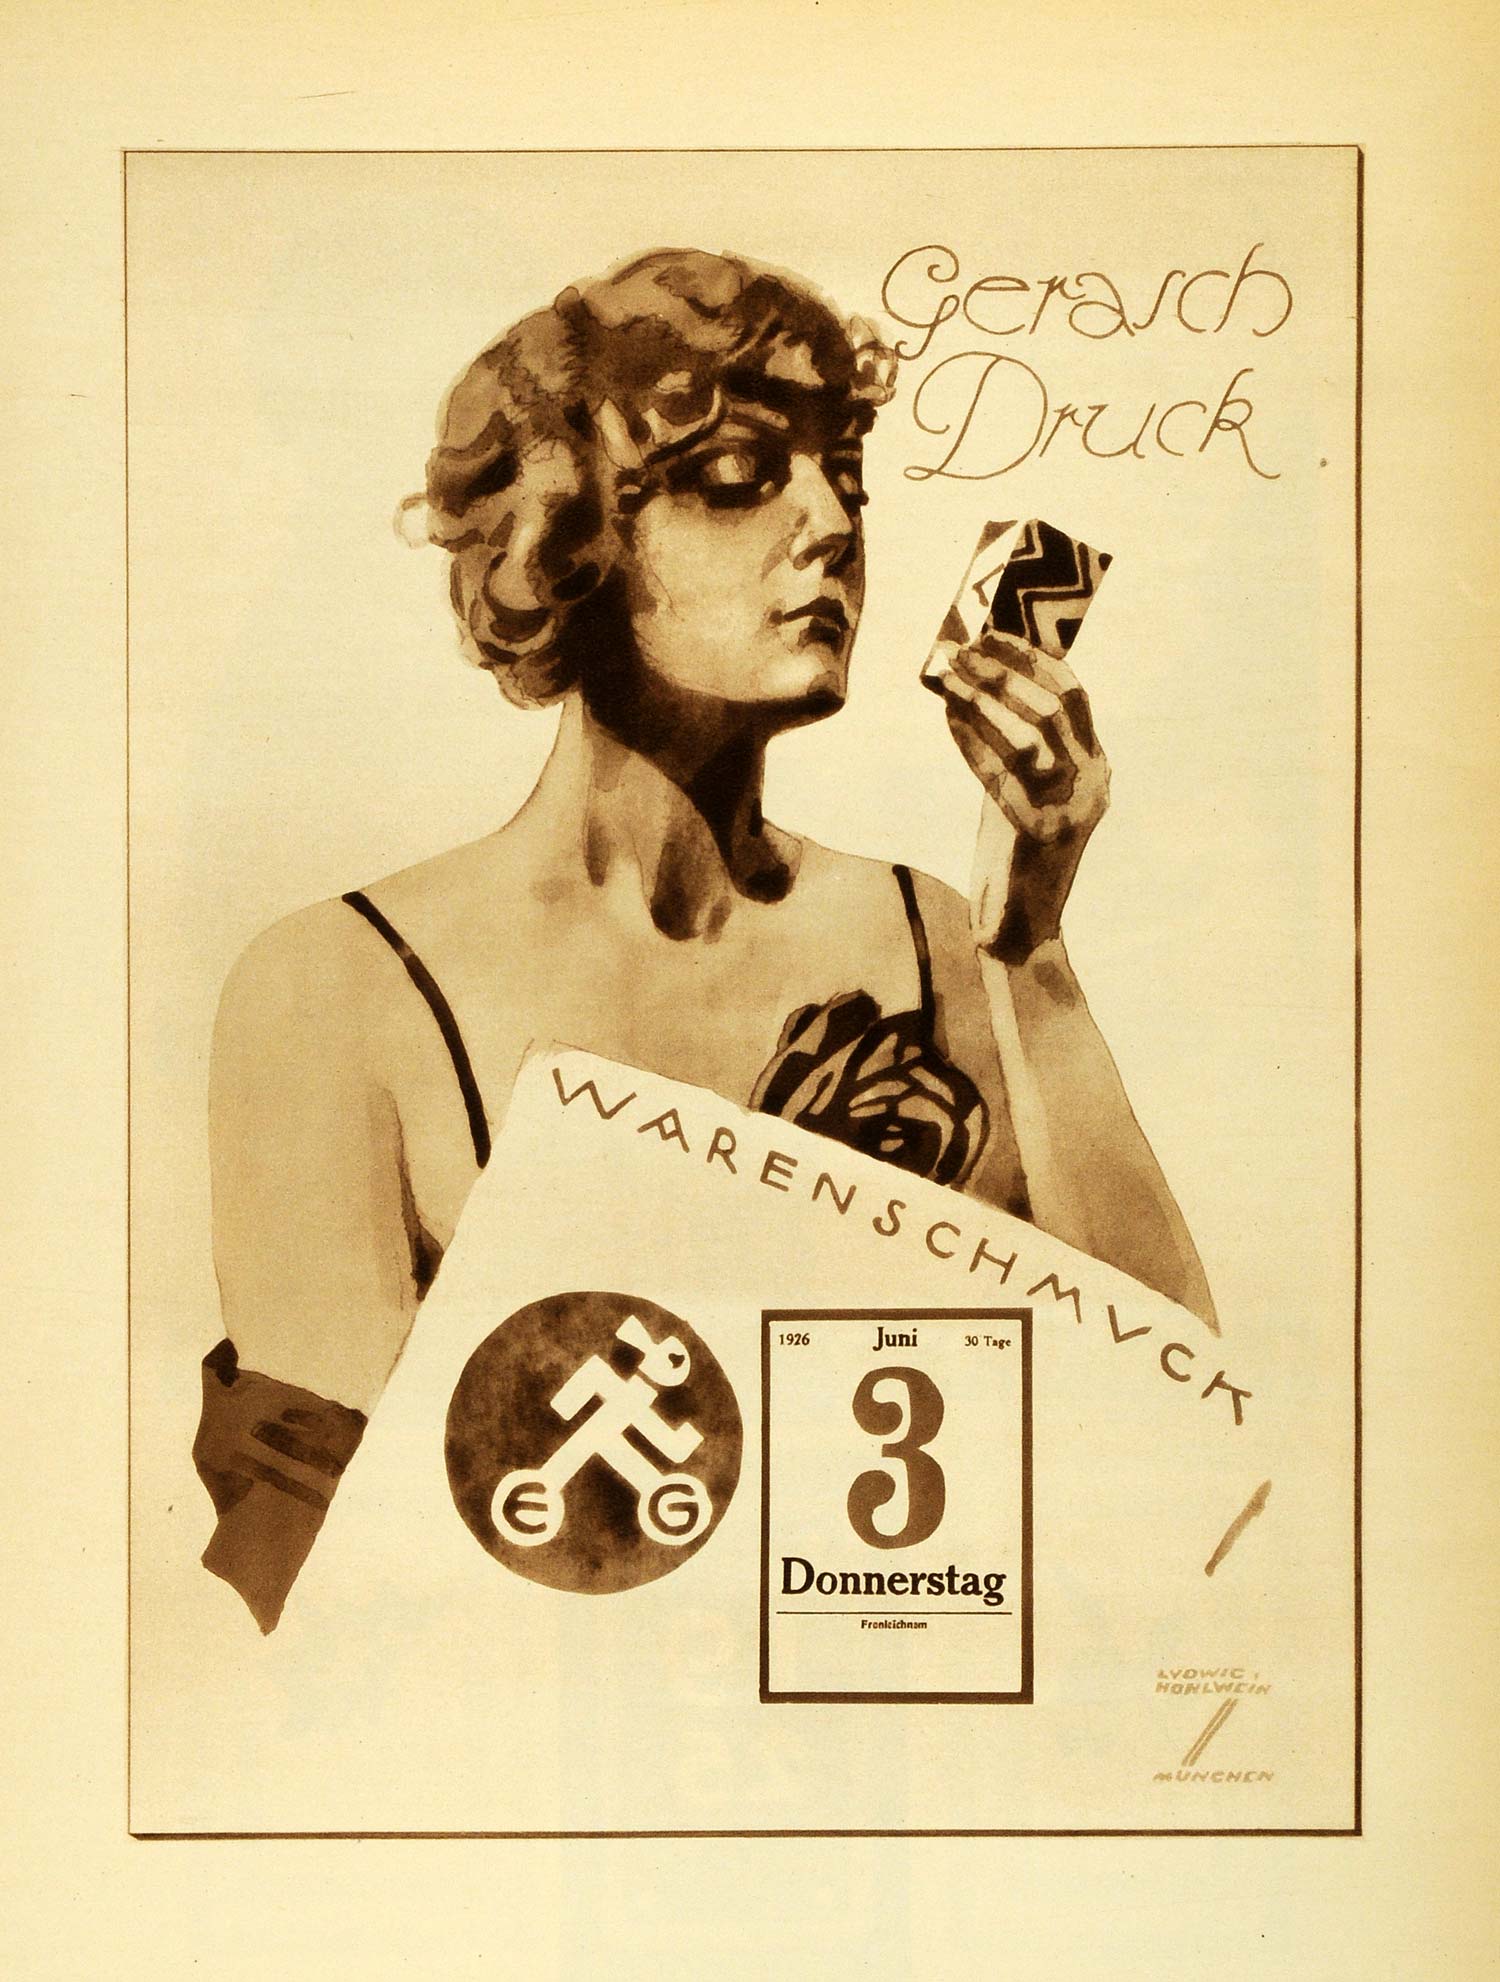 1926 Photogravure Ludwig Hohlwein Gerasch Druck Calendar Design German Art Ad